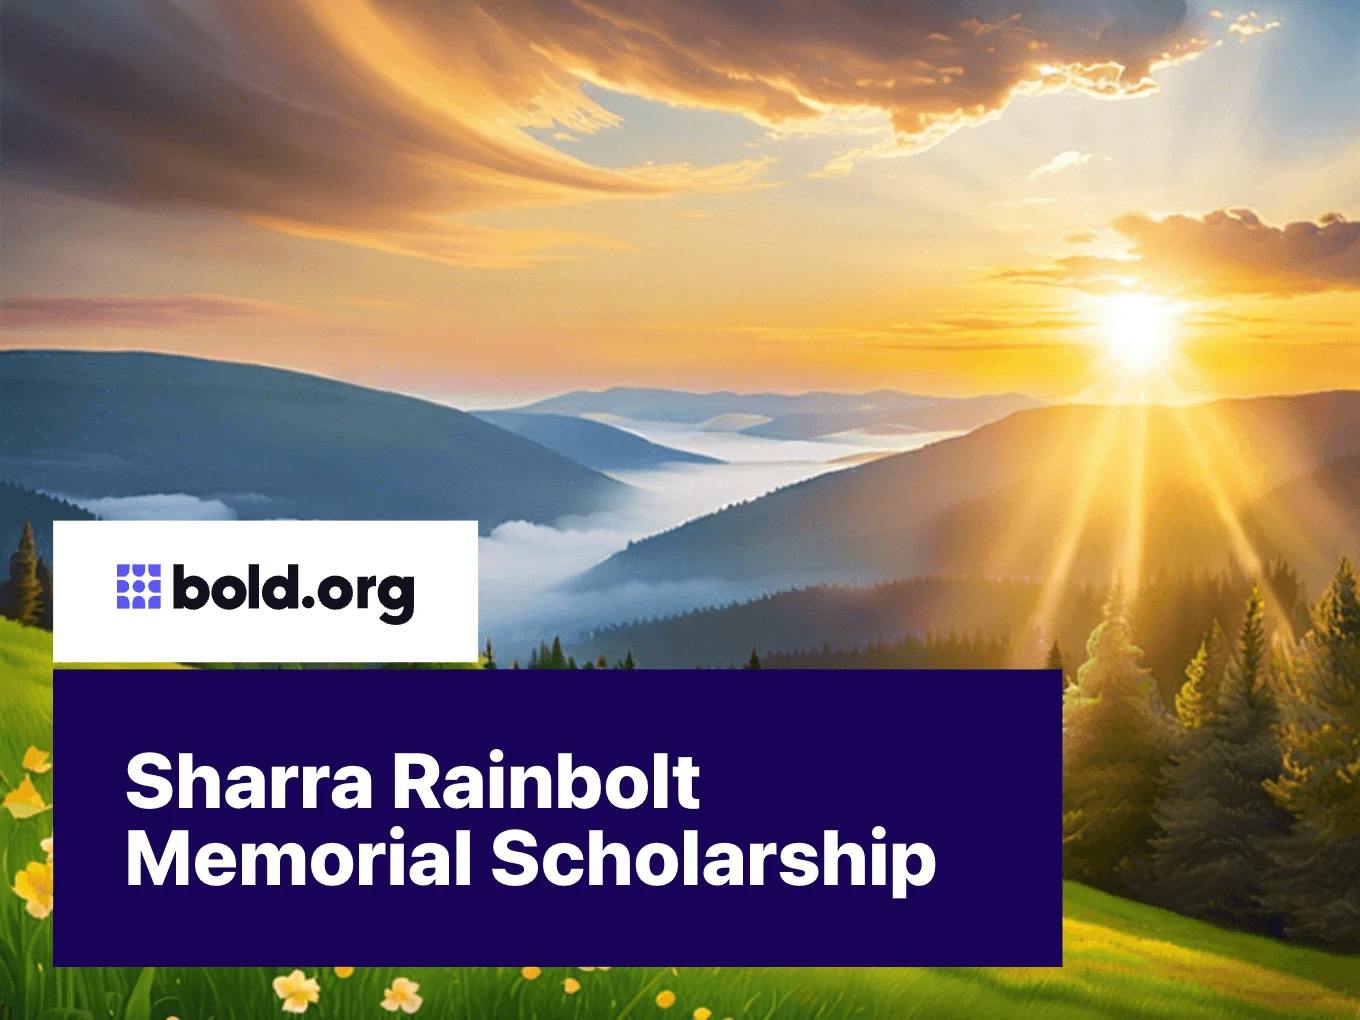 Sharra Rainbolt Memorial Scholarship